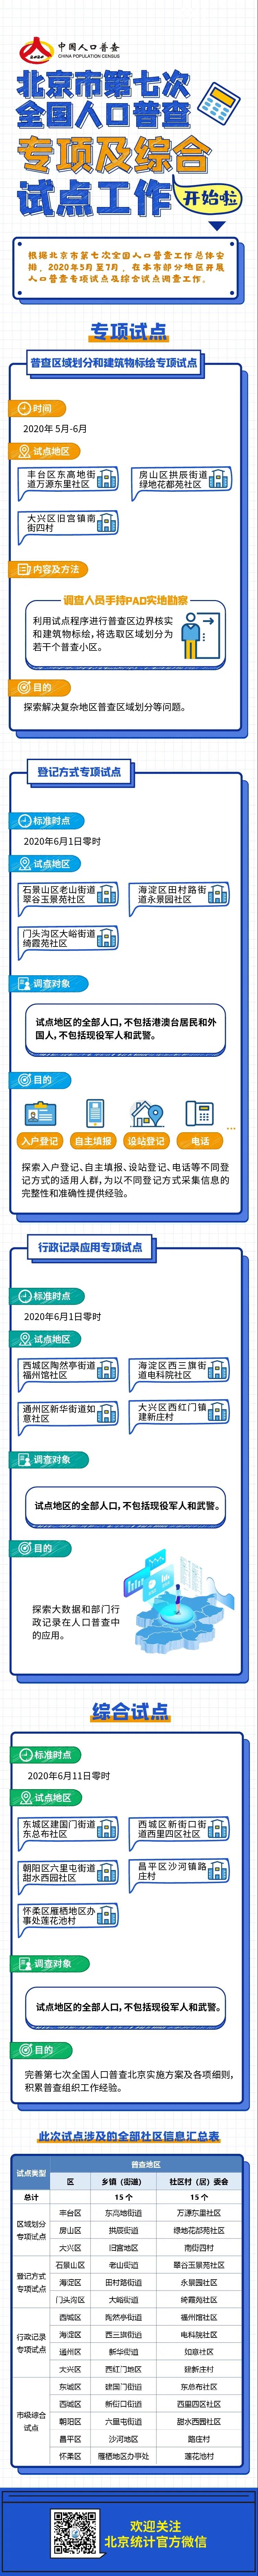 北京市第七次全国人口普查专项及综合试点工作